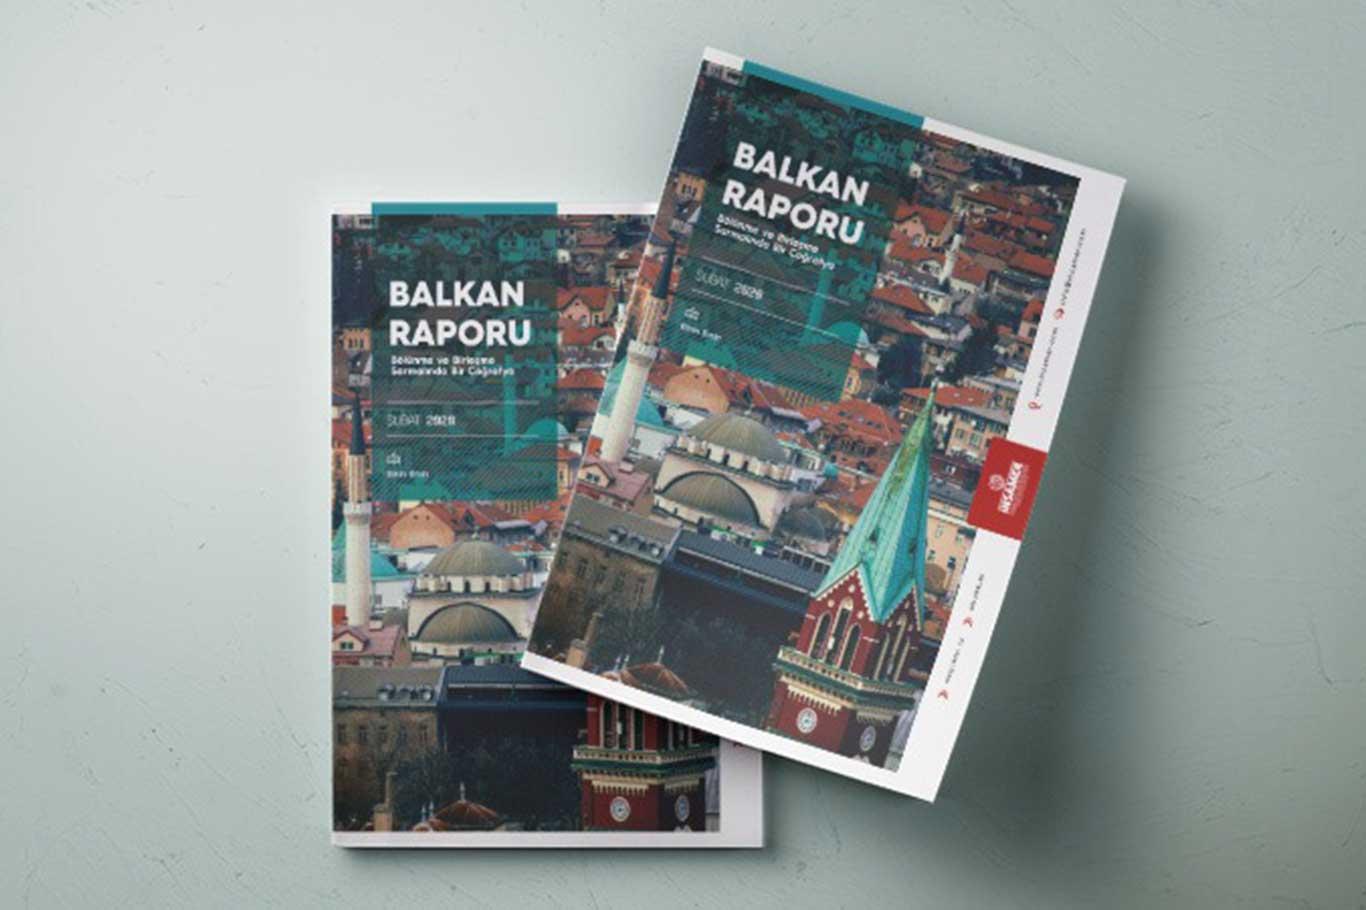 İNSAMER Balkan raporunu yayımladı